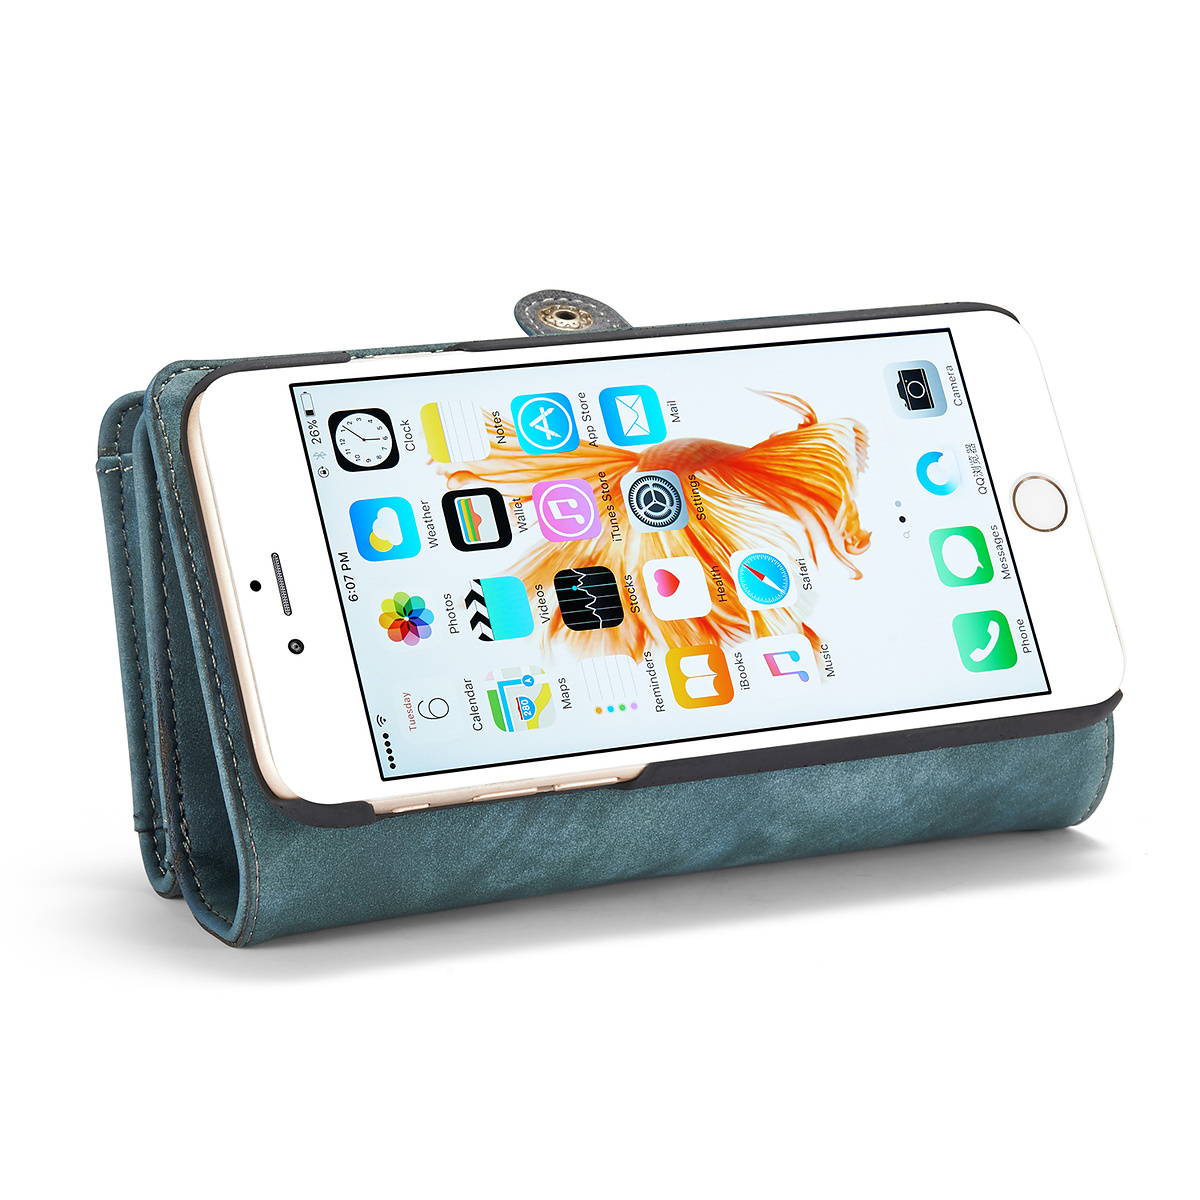 CaseMe plånboksfodral med magnetskal till iPhone 6/6S, blå